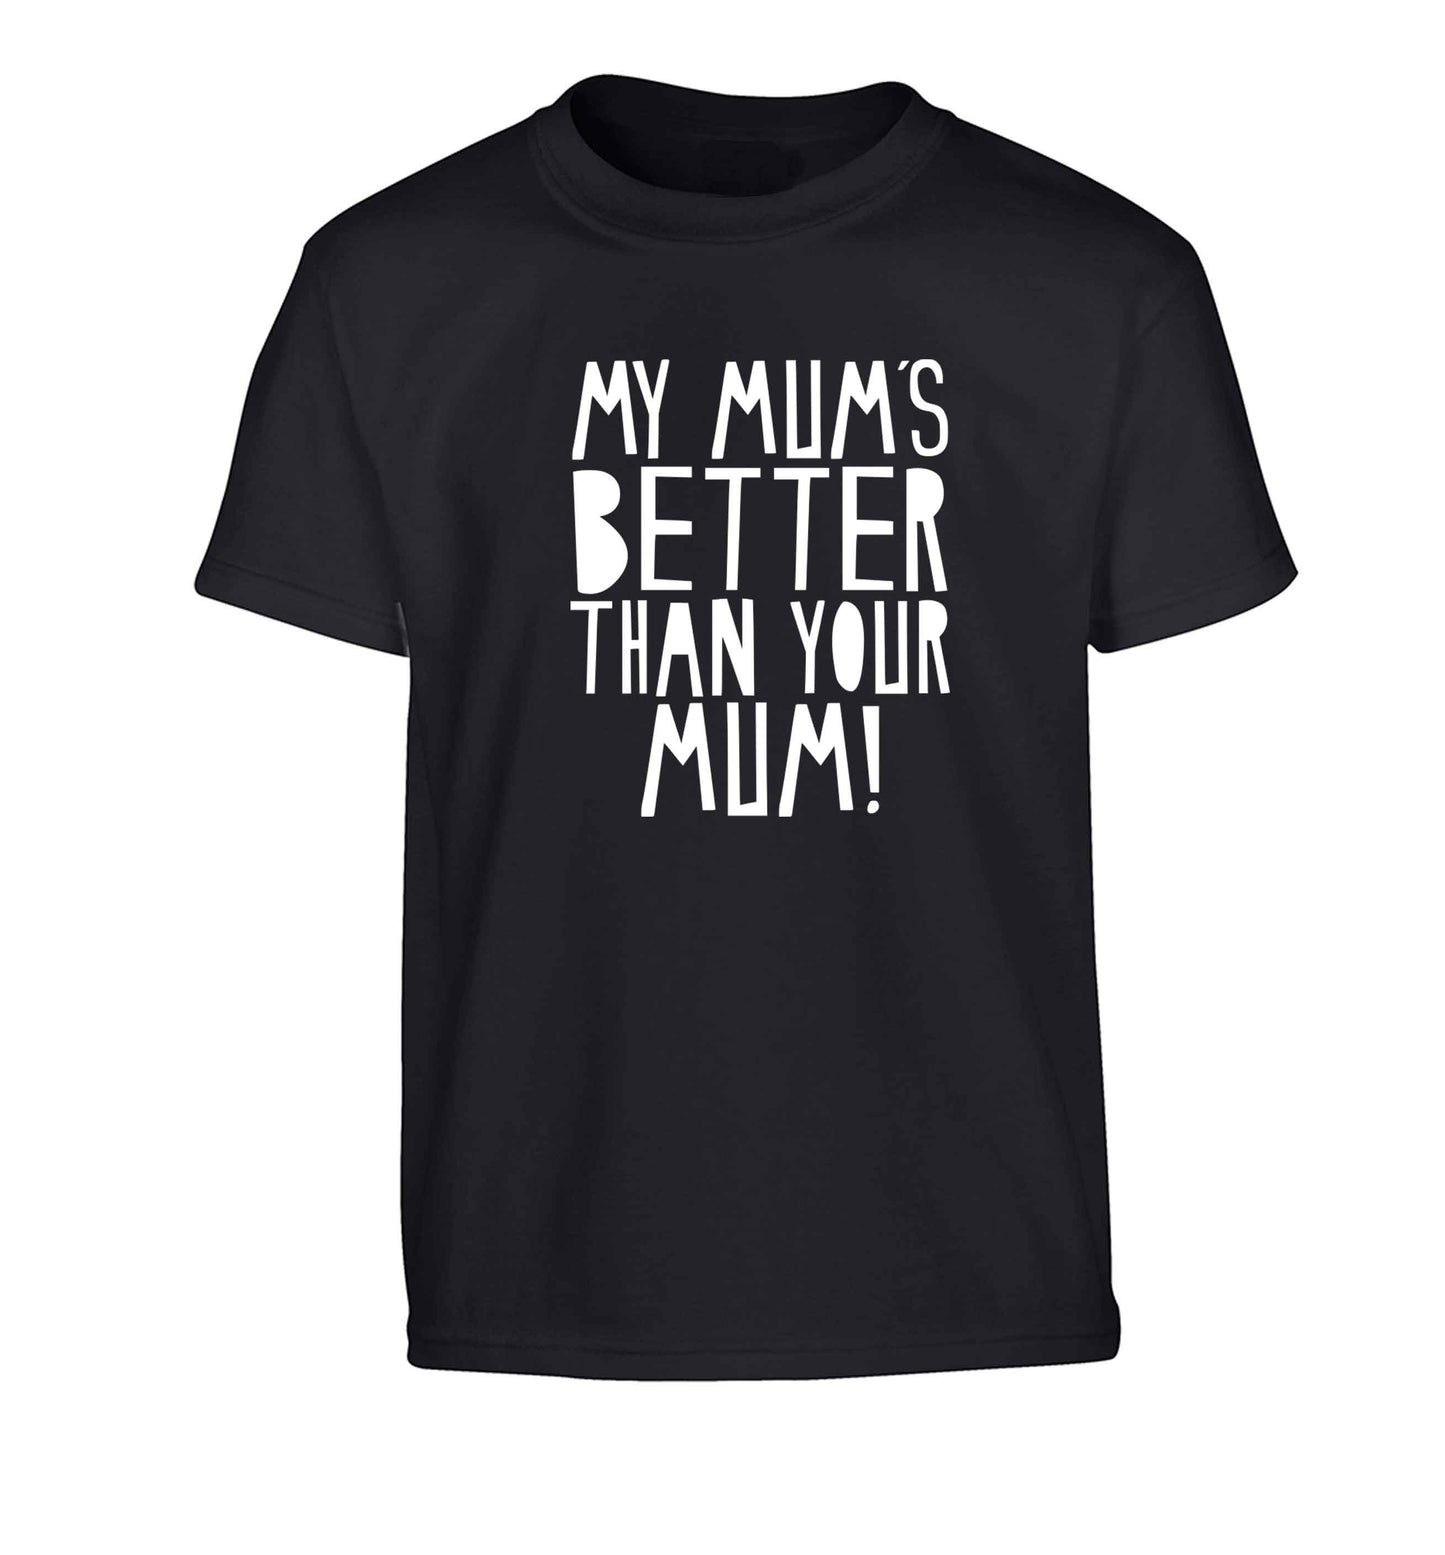 My mum's better than your mum Children's black Tshirt 12-13 Years